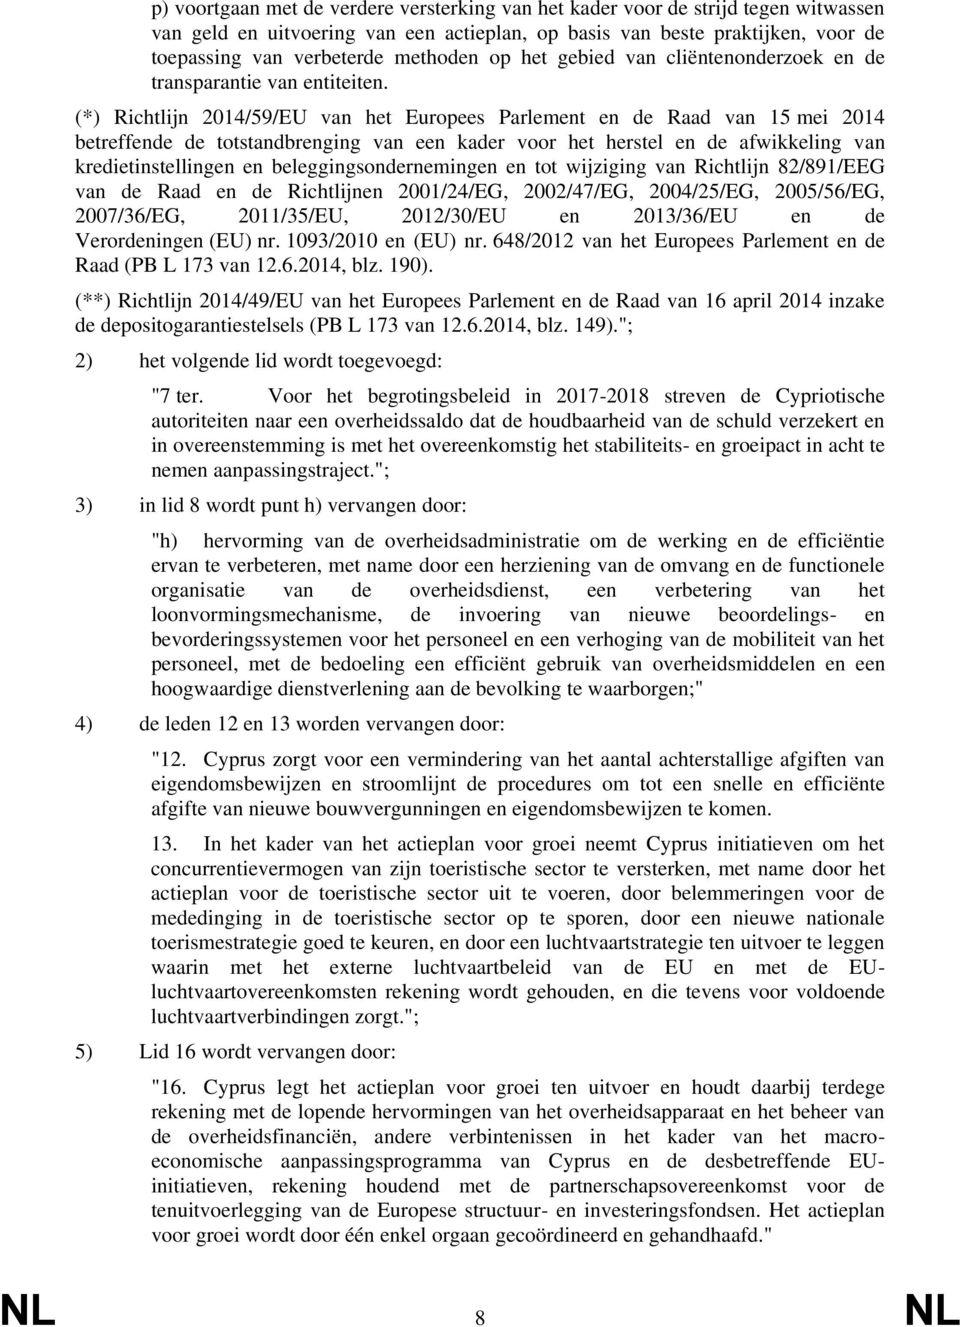 (*) Richtlijn 2014/59/EU van het Europees Parlement en de Raad van 15 mei 2014 betreffende de totstandbrenging van een kader voor het herstel en de afwikkeling van kredietinstellingen en